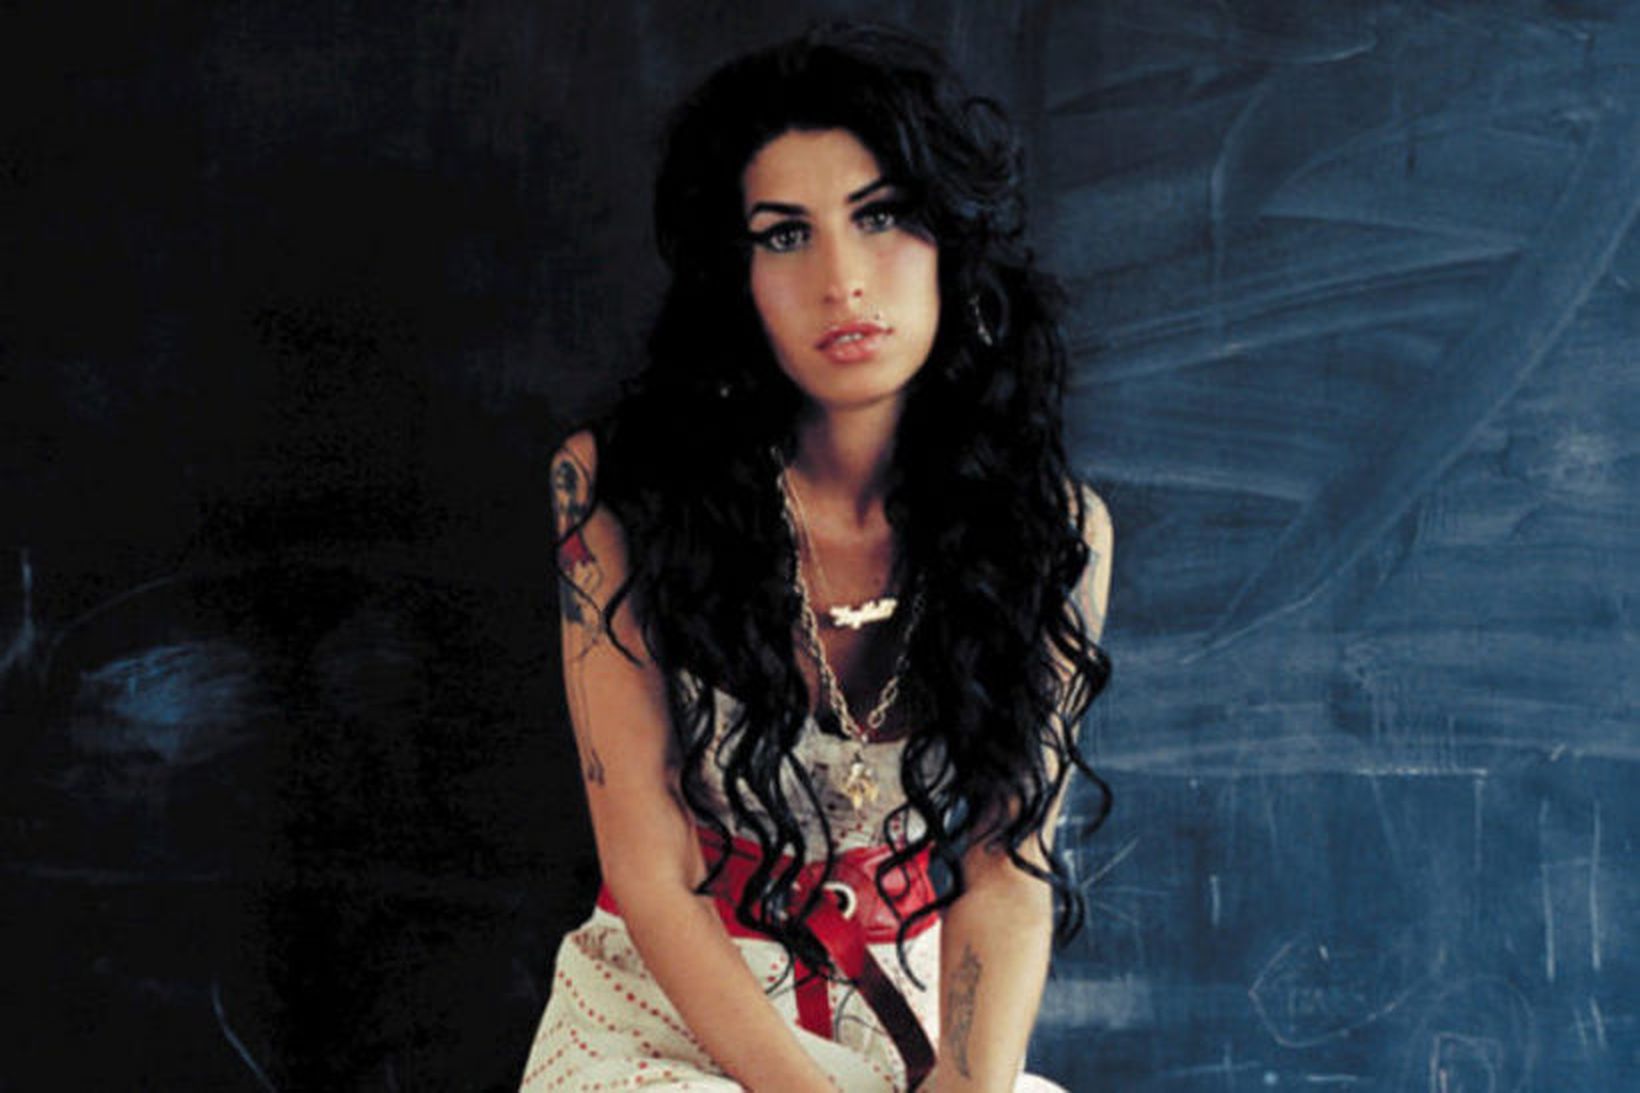 Amy Winehouse hefði orðið 35 ára í dag hefði hún …